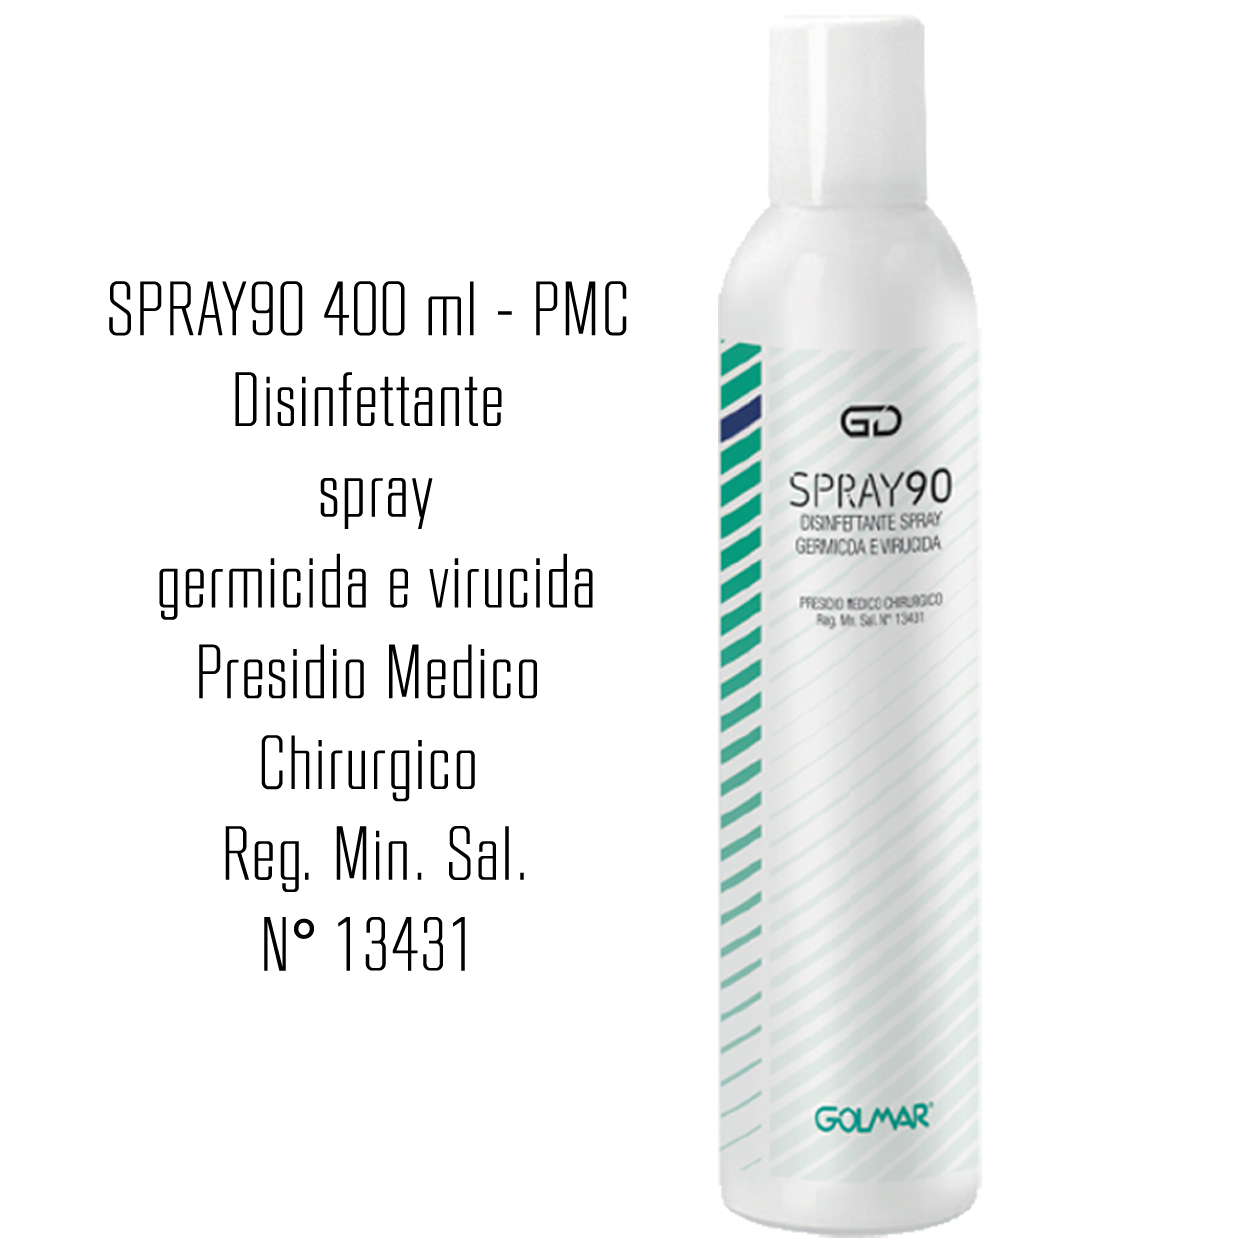 GOLMAR GD90 Spray 400 ml - PMC disinfettante professionale ad ampio spettro (virucida incluso famiglia Coronavirus, battericida e levuricida)